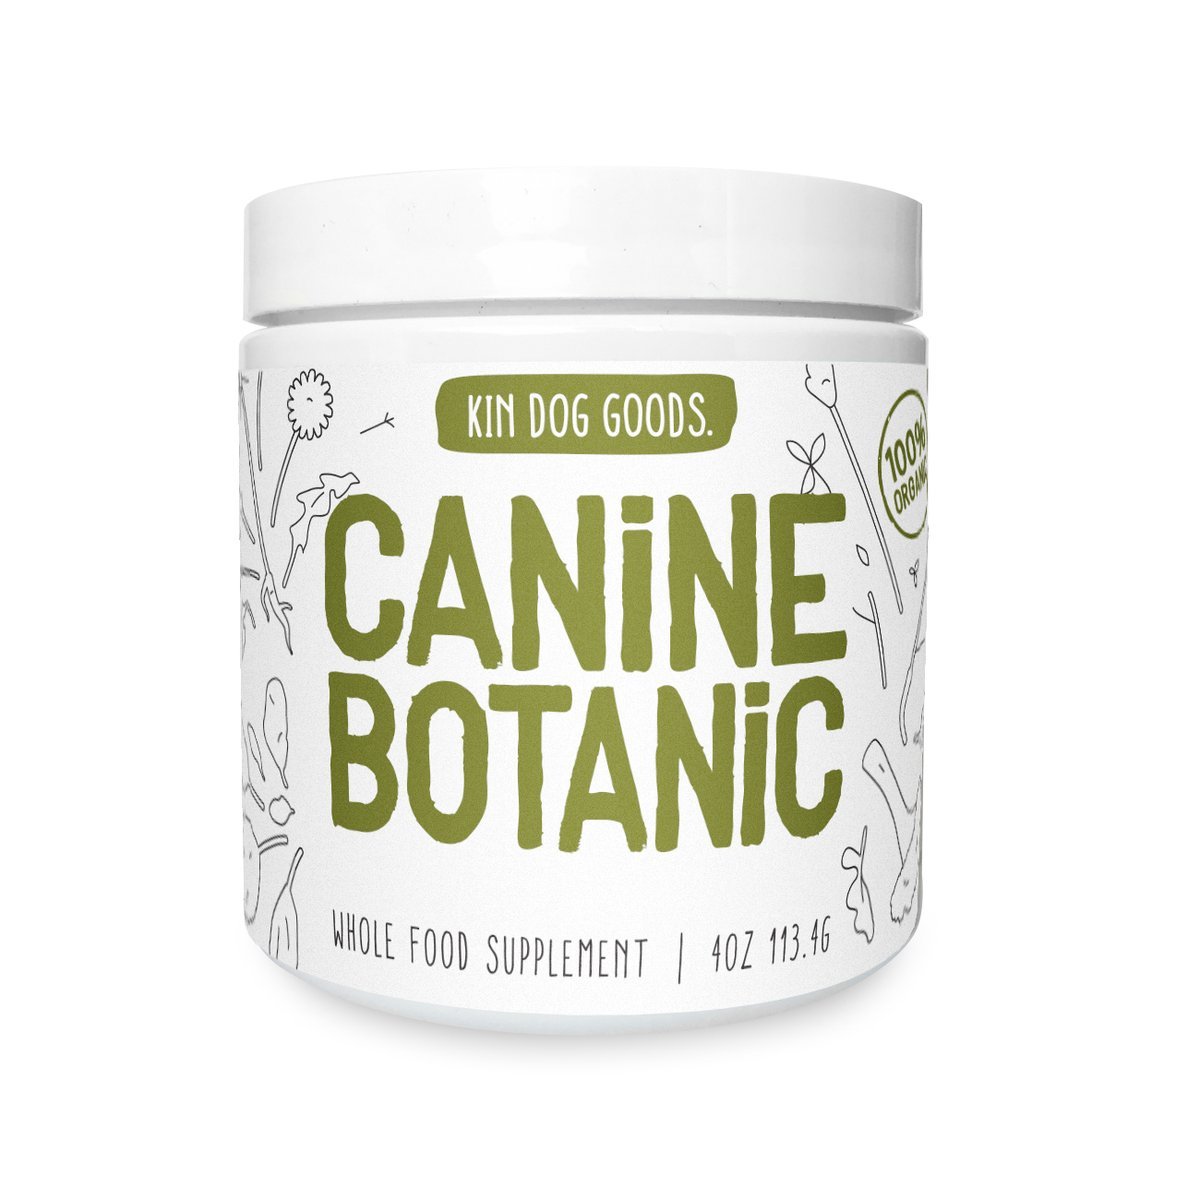 Kin Dog Goods Canine Botanic Dog Supplement (4oz) - CreatureLand